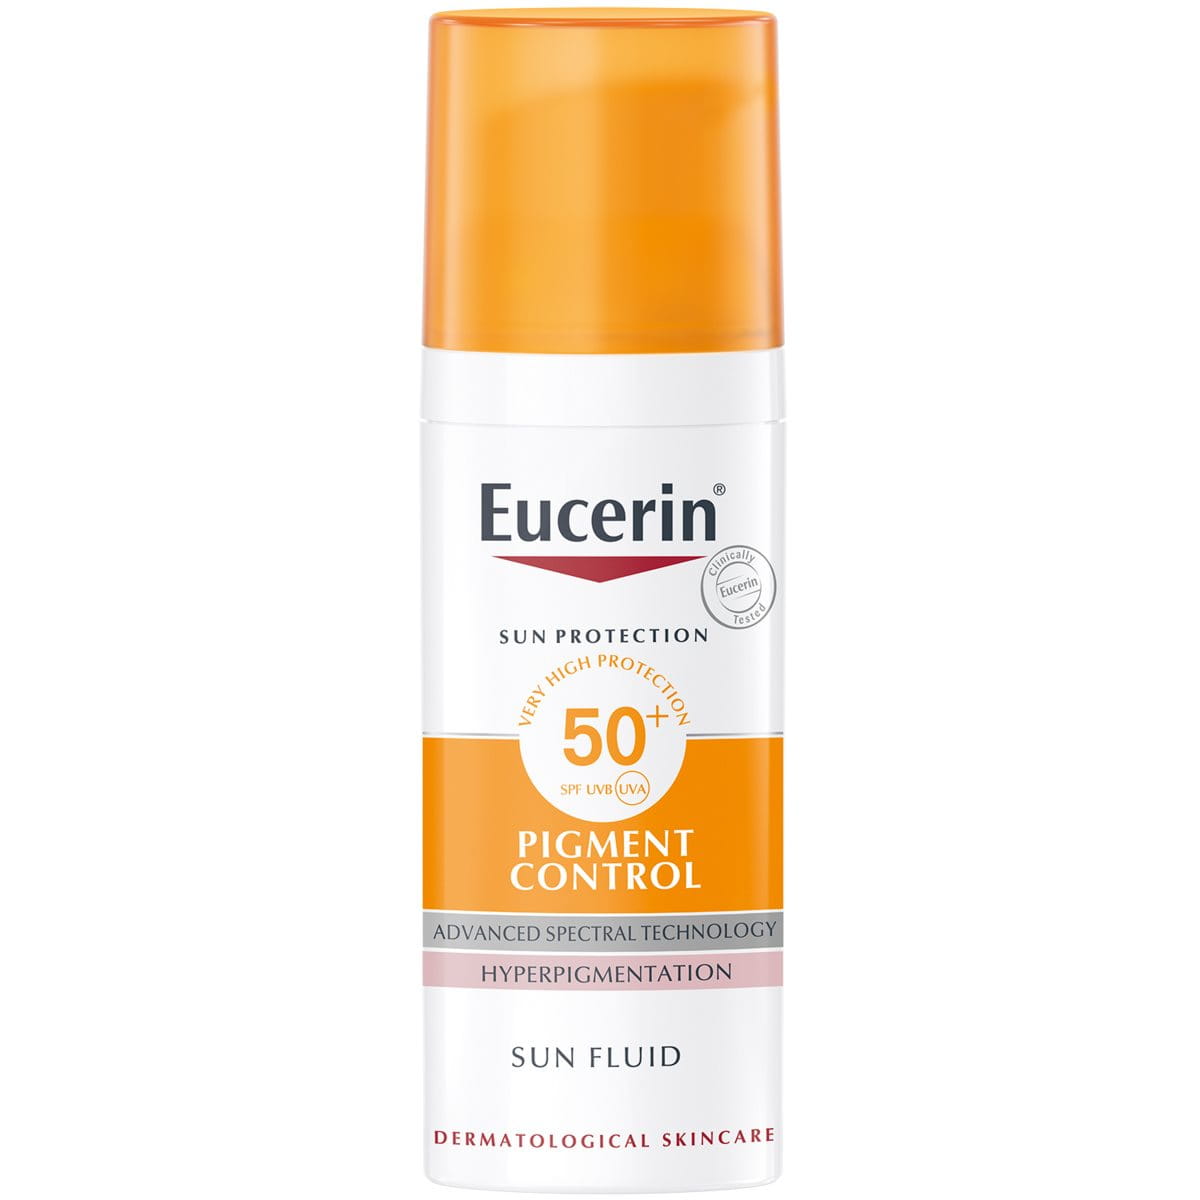 Eucerin SUN PIGMENT CONTROL Fluid SPF 50+